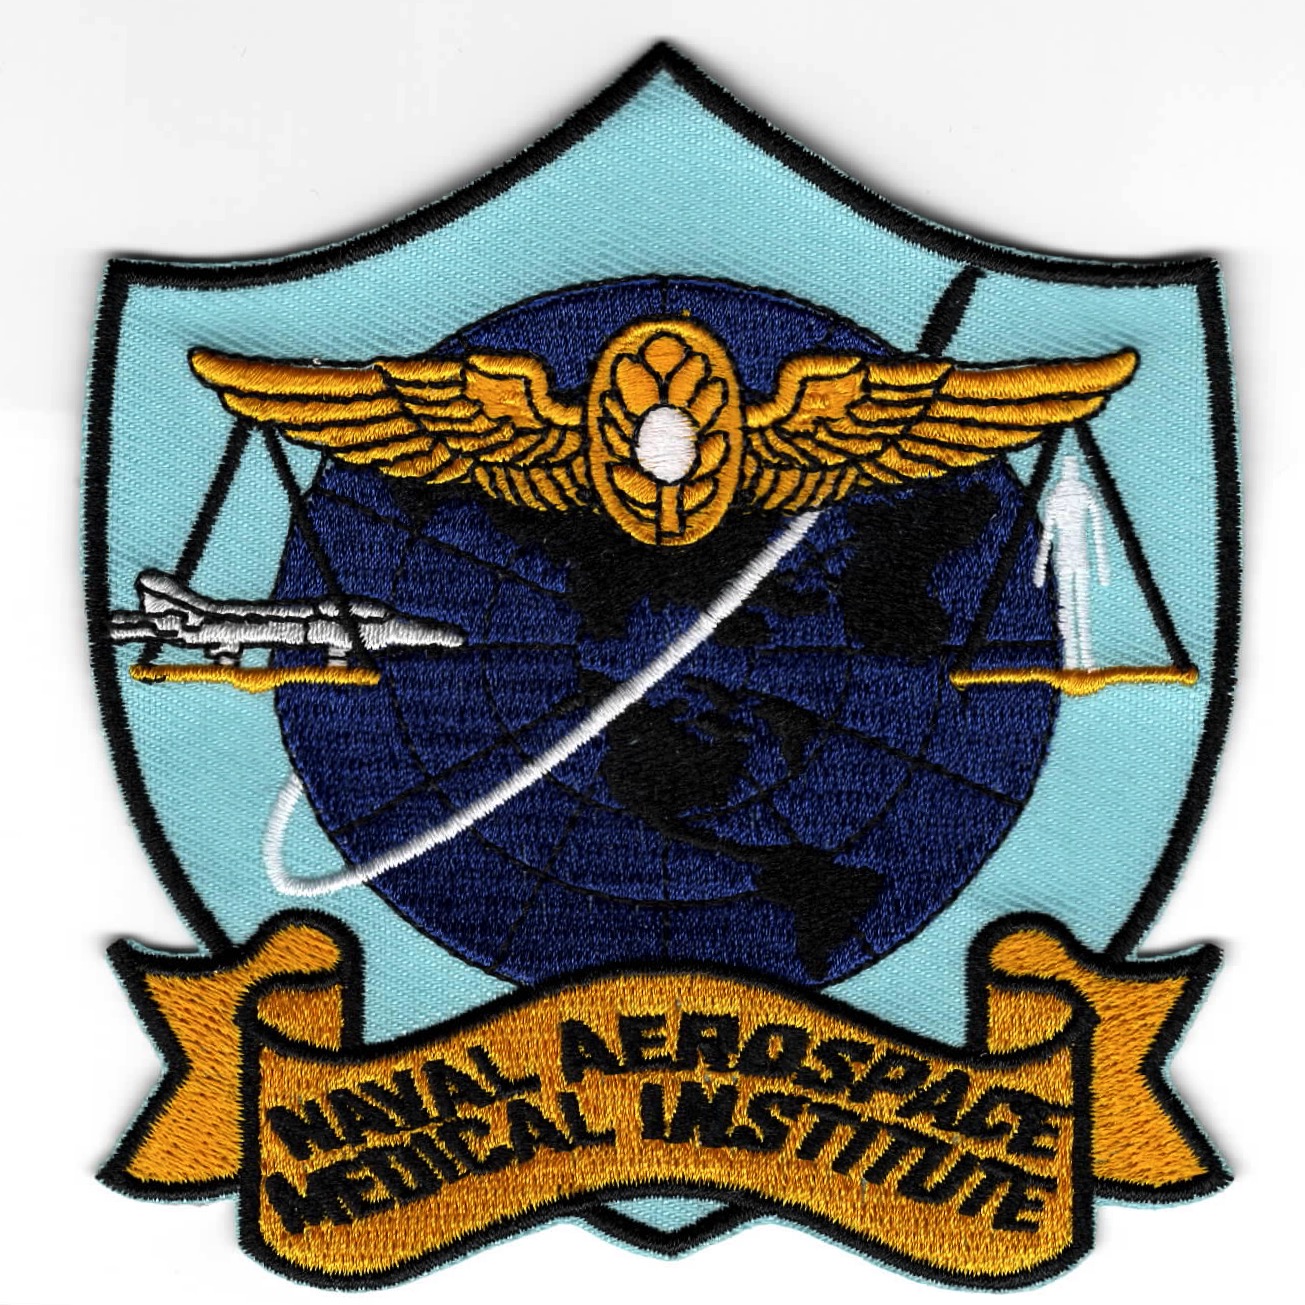 Naval Aerospace Medical Institute (NAMI)